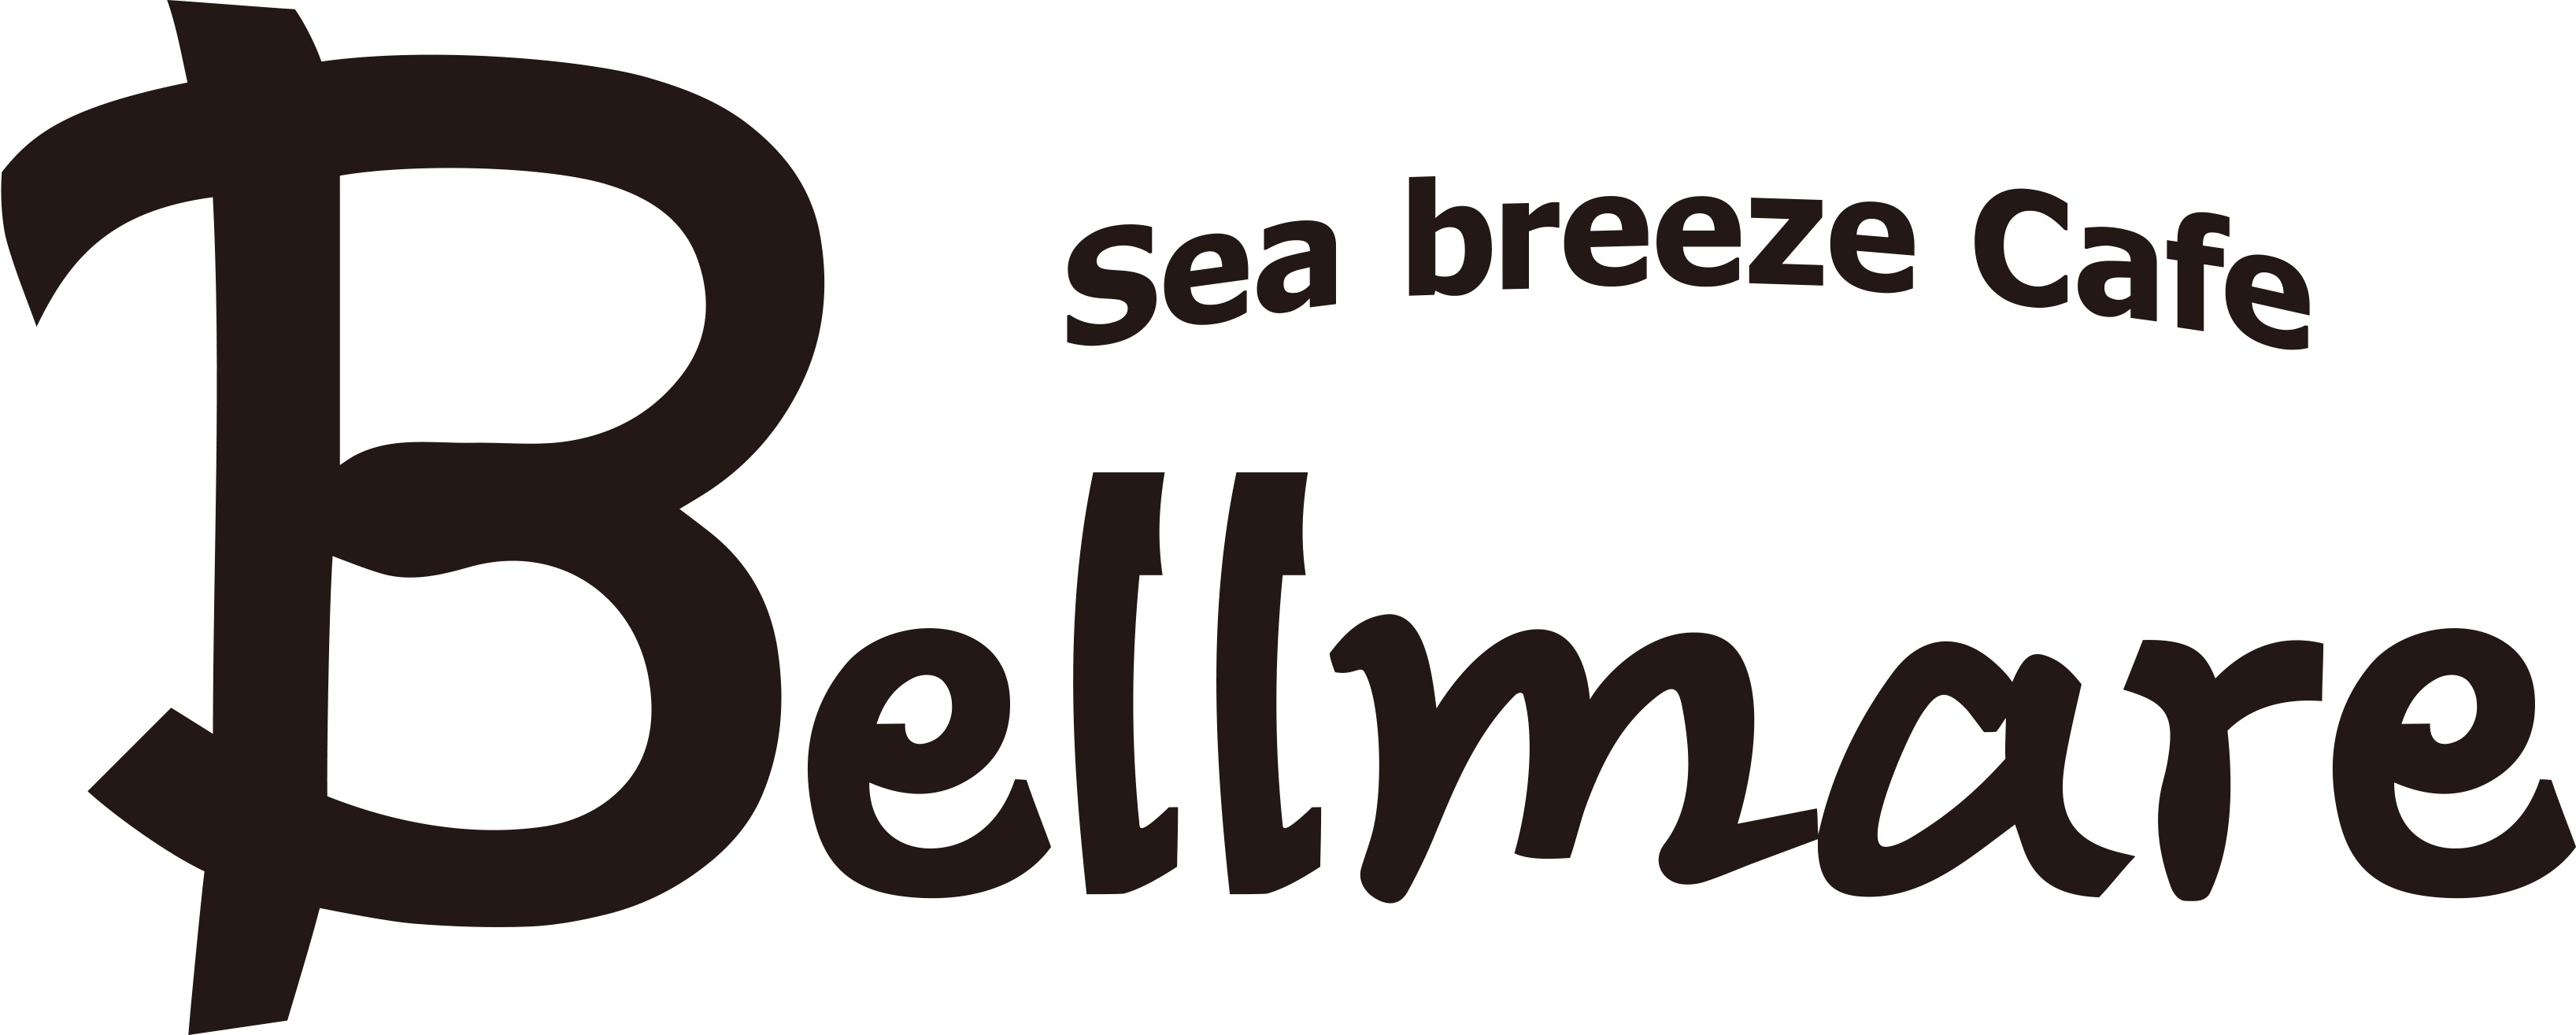 Sea Breeze Cafe Bellmare